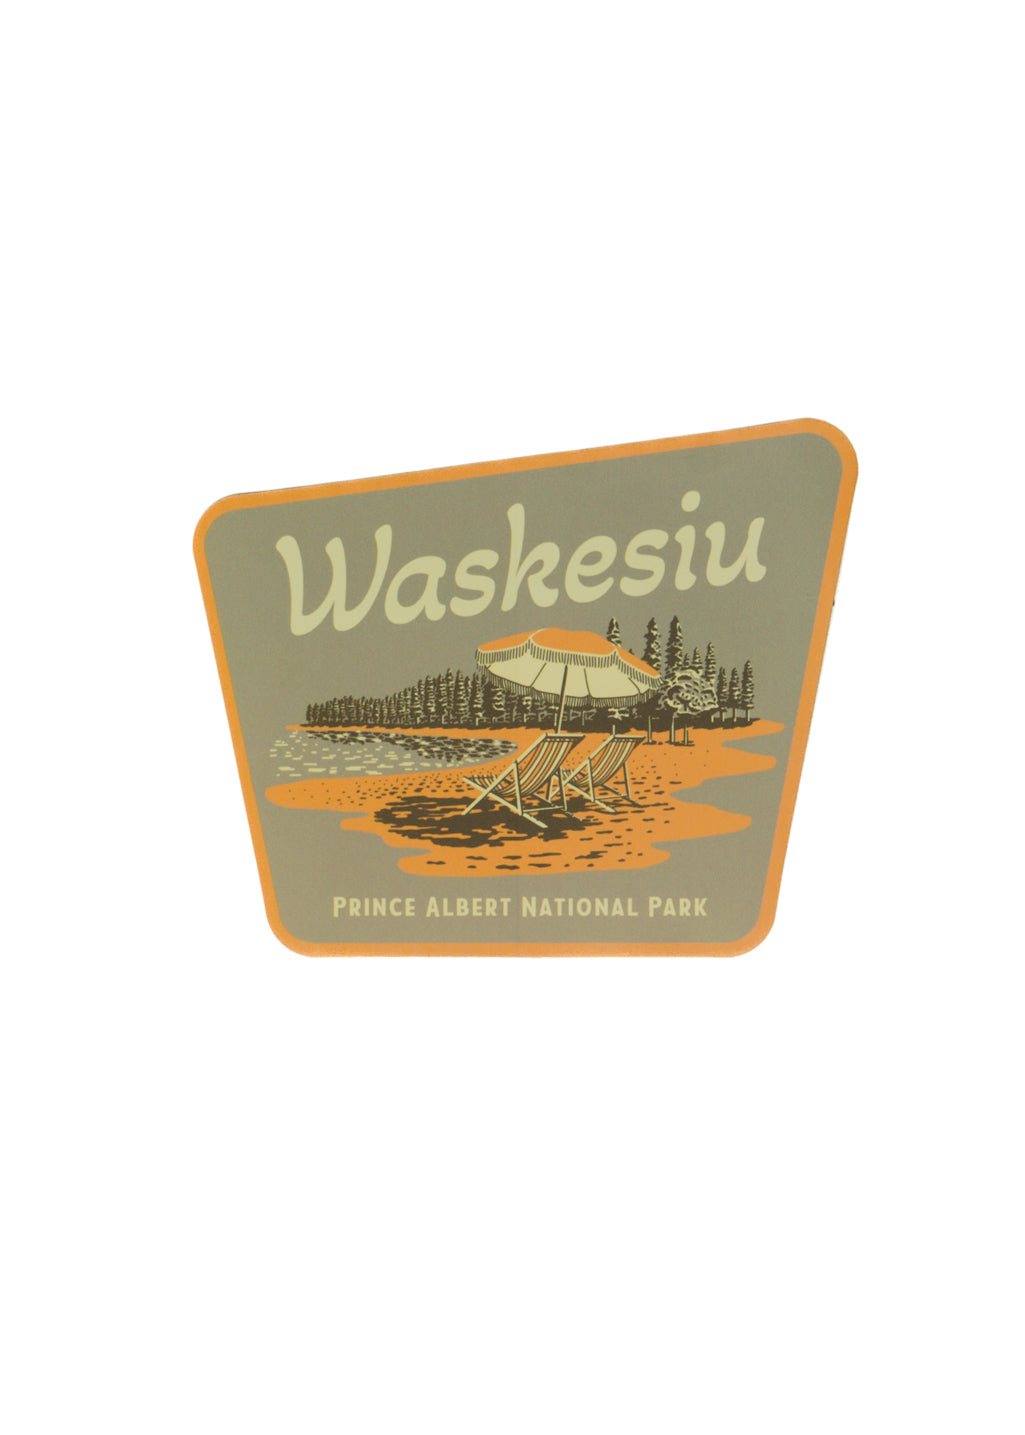 Waskesiu Sticker - Hardpressed Print Studio Inc.